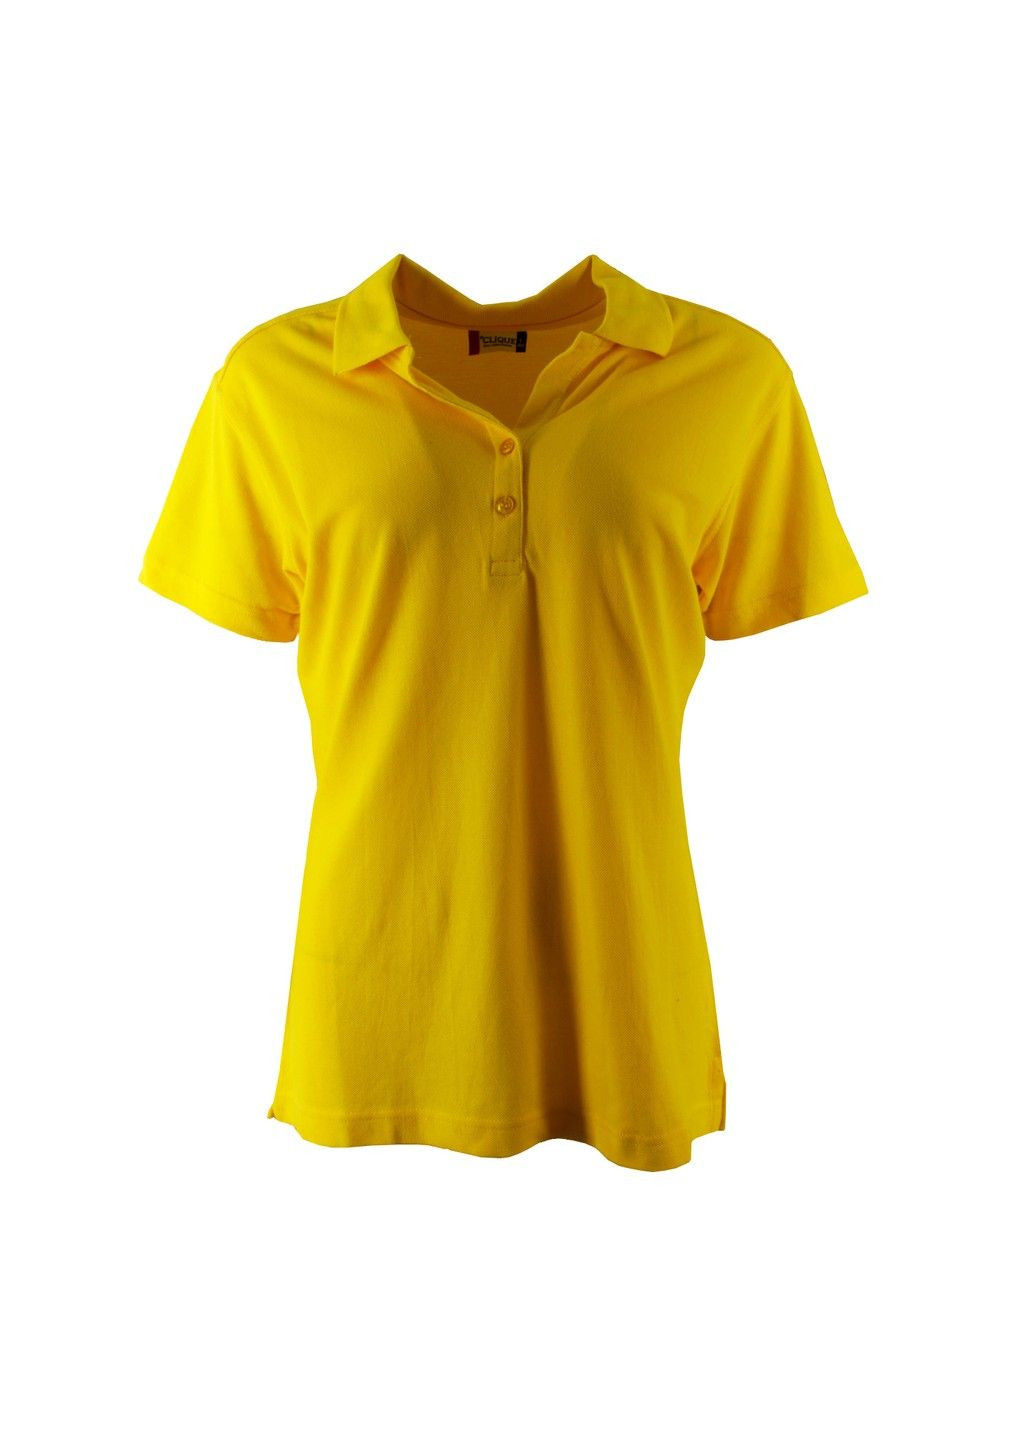 Желтая футболка женская Clique